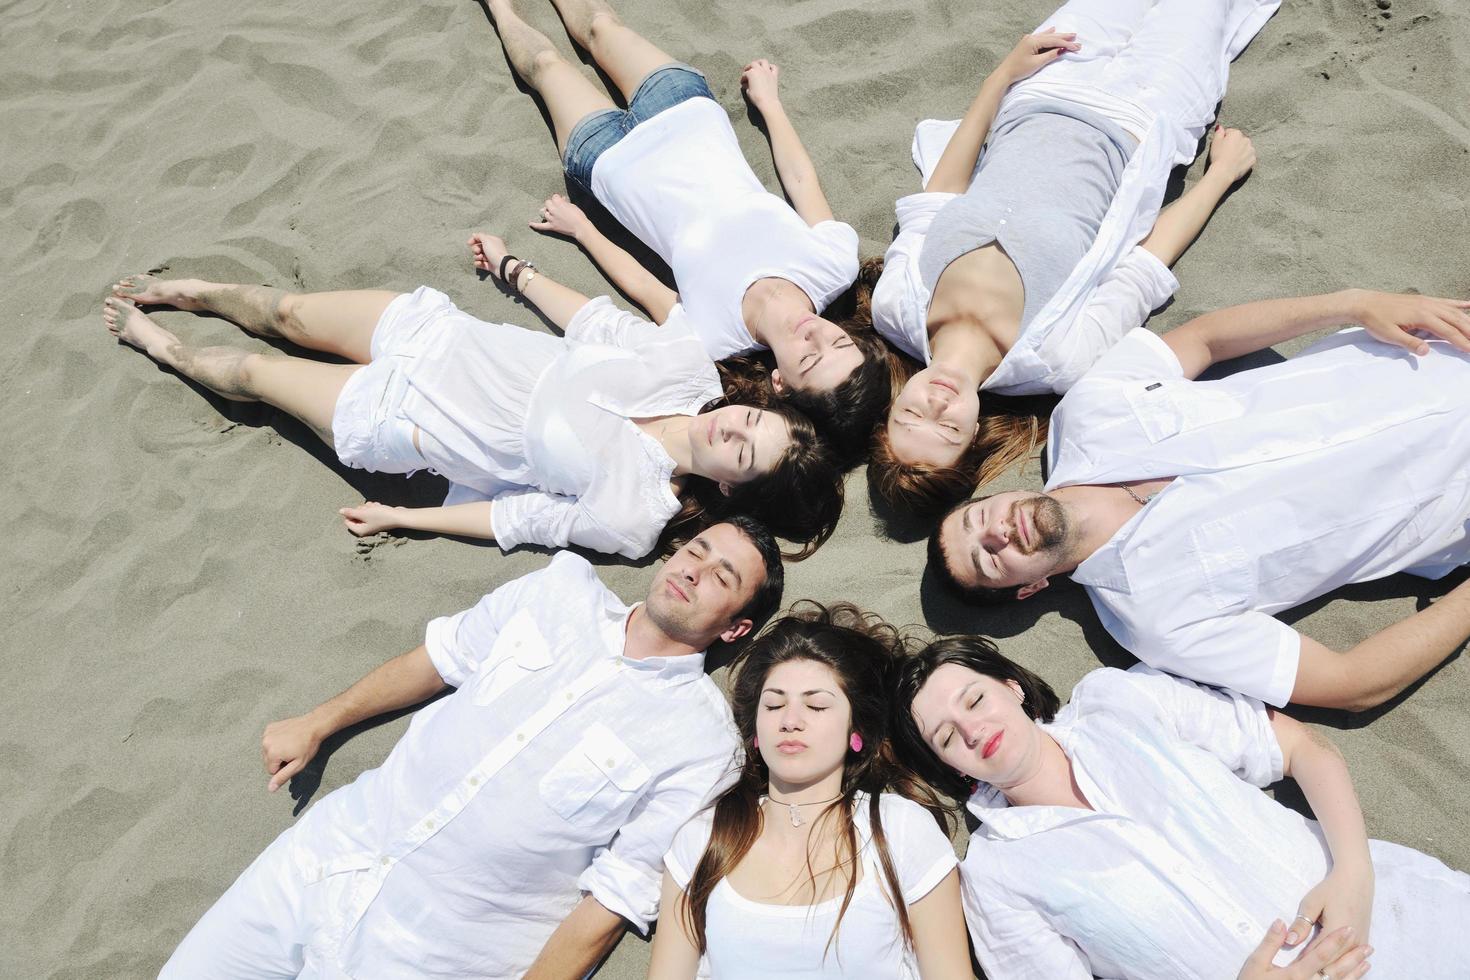 groupe de jeunes heureux qui s'amusent à la plage photo